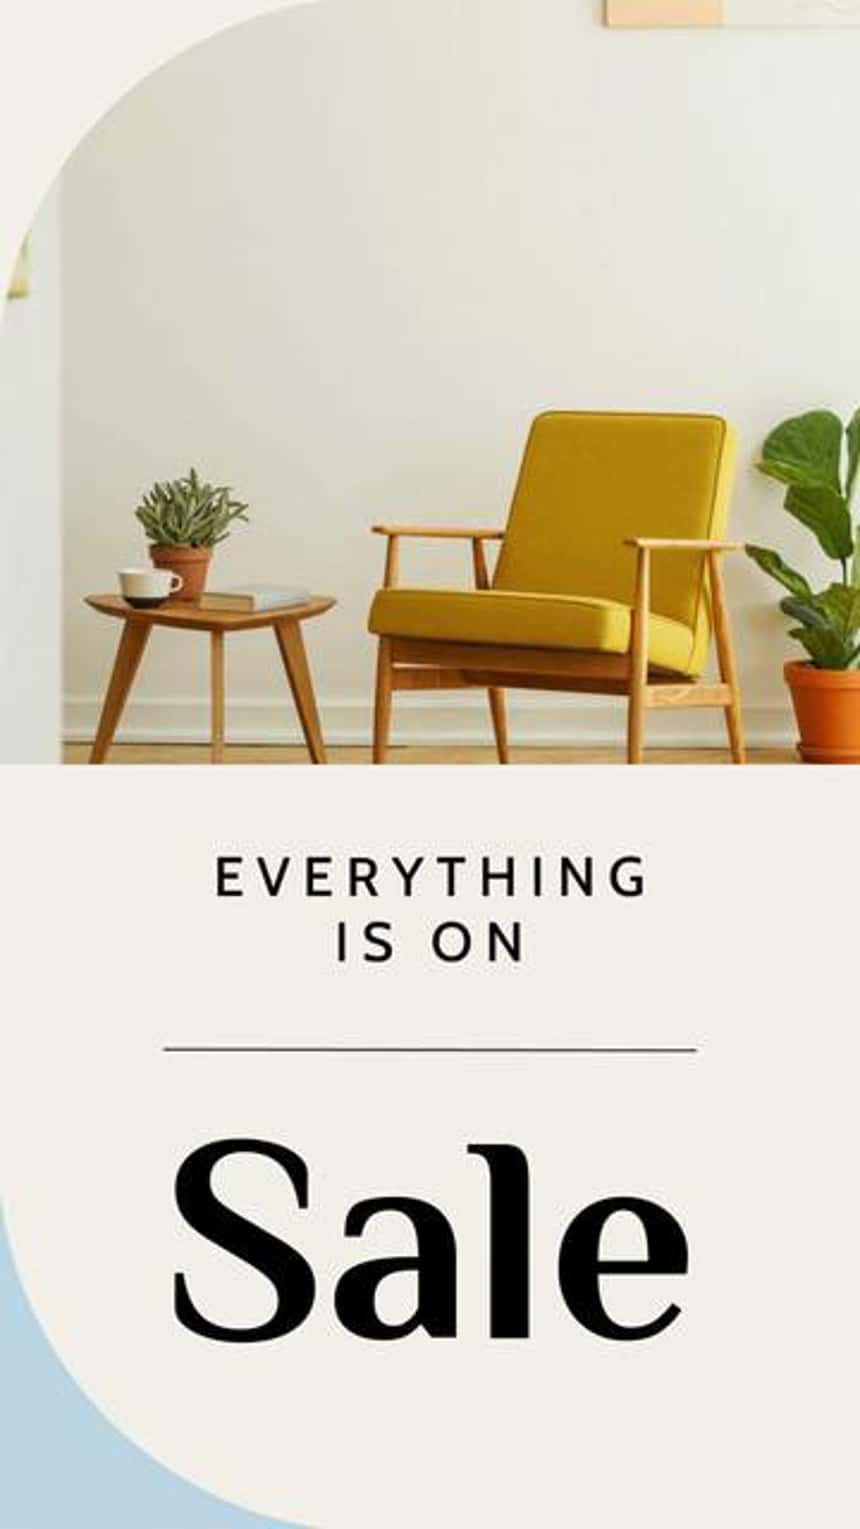 Vorlage für eine Video-Werbeanzeige auf Instagram für ein Möbelgeschäft, das ein Bild mit gelbem Stuhl, Pflanzen und Beistelltisch zeigt. Der Text auf dem Bild lautet: „Everything is on sale.“